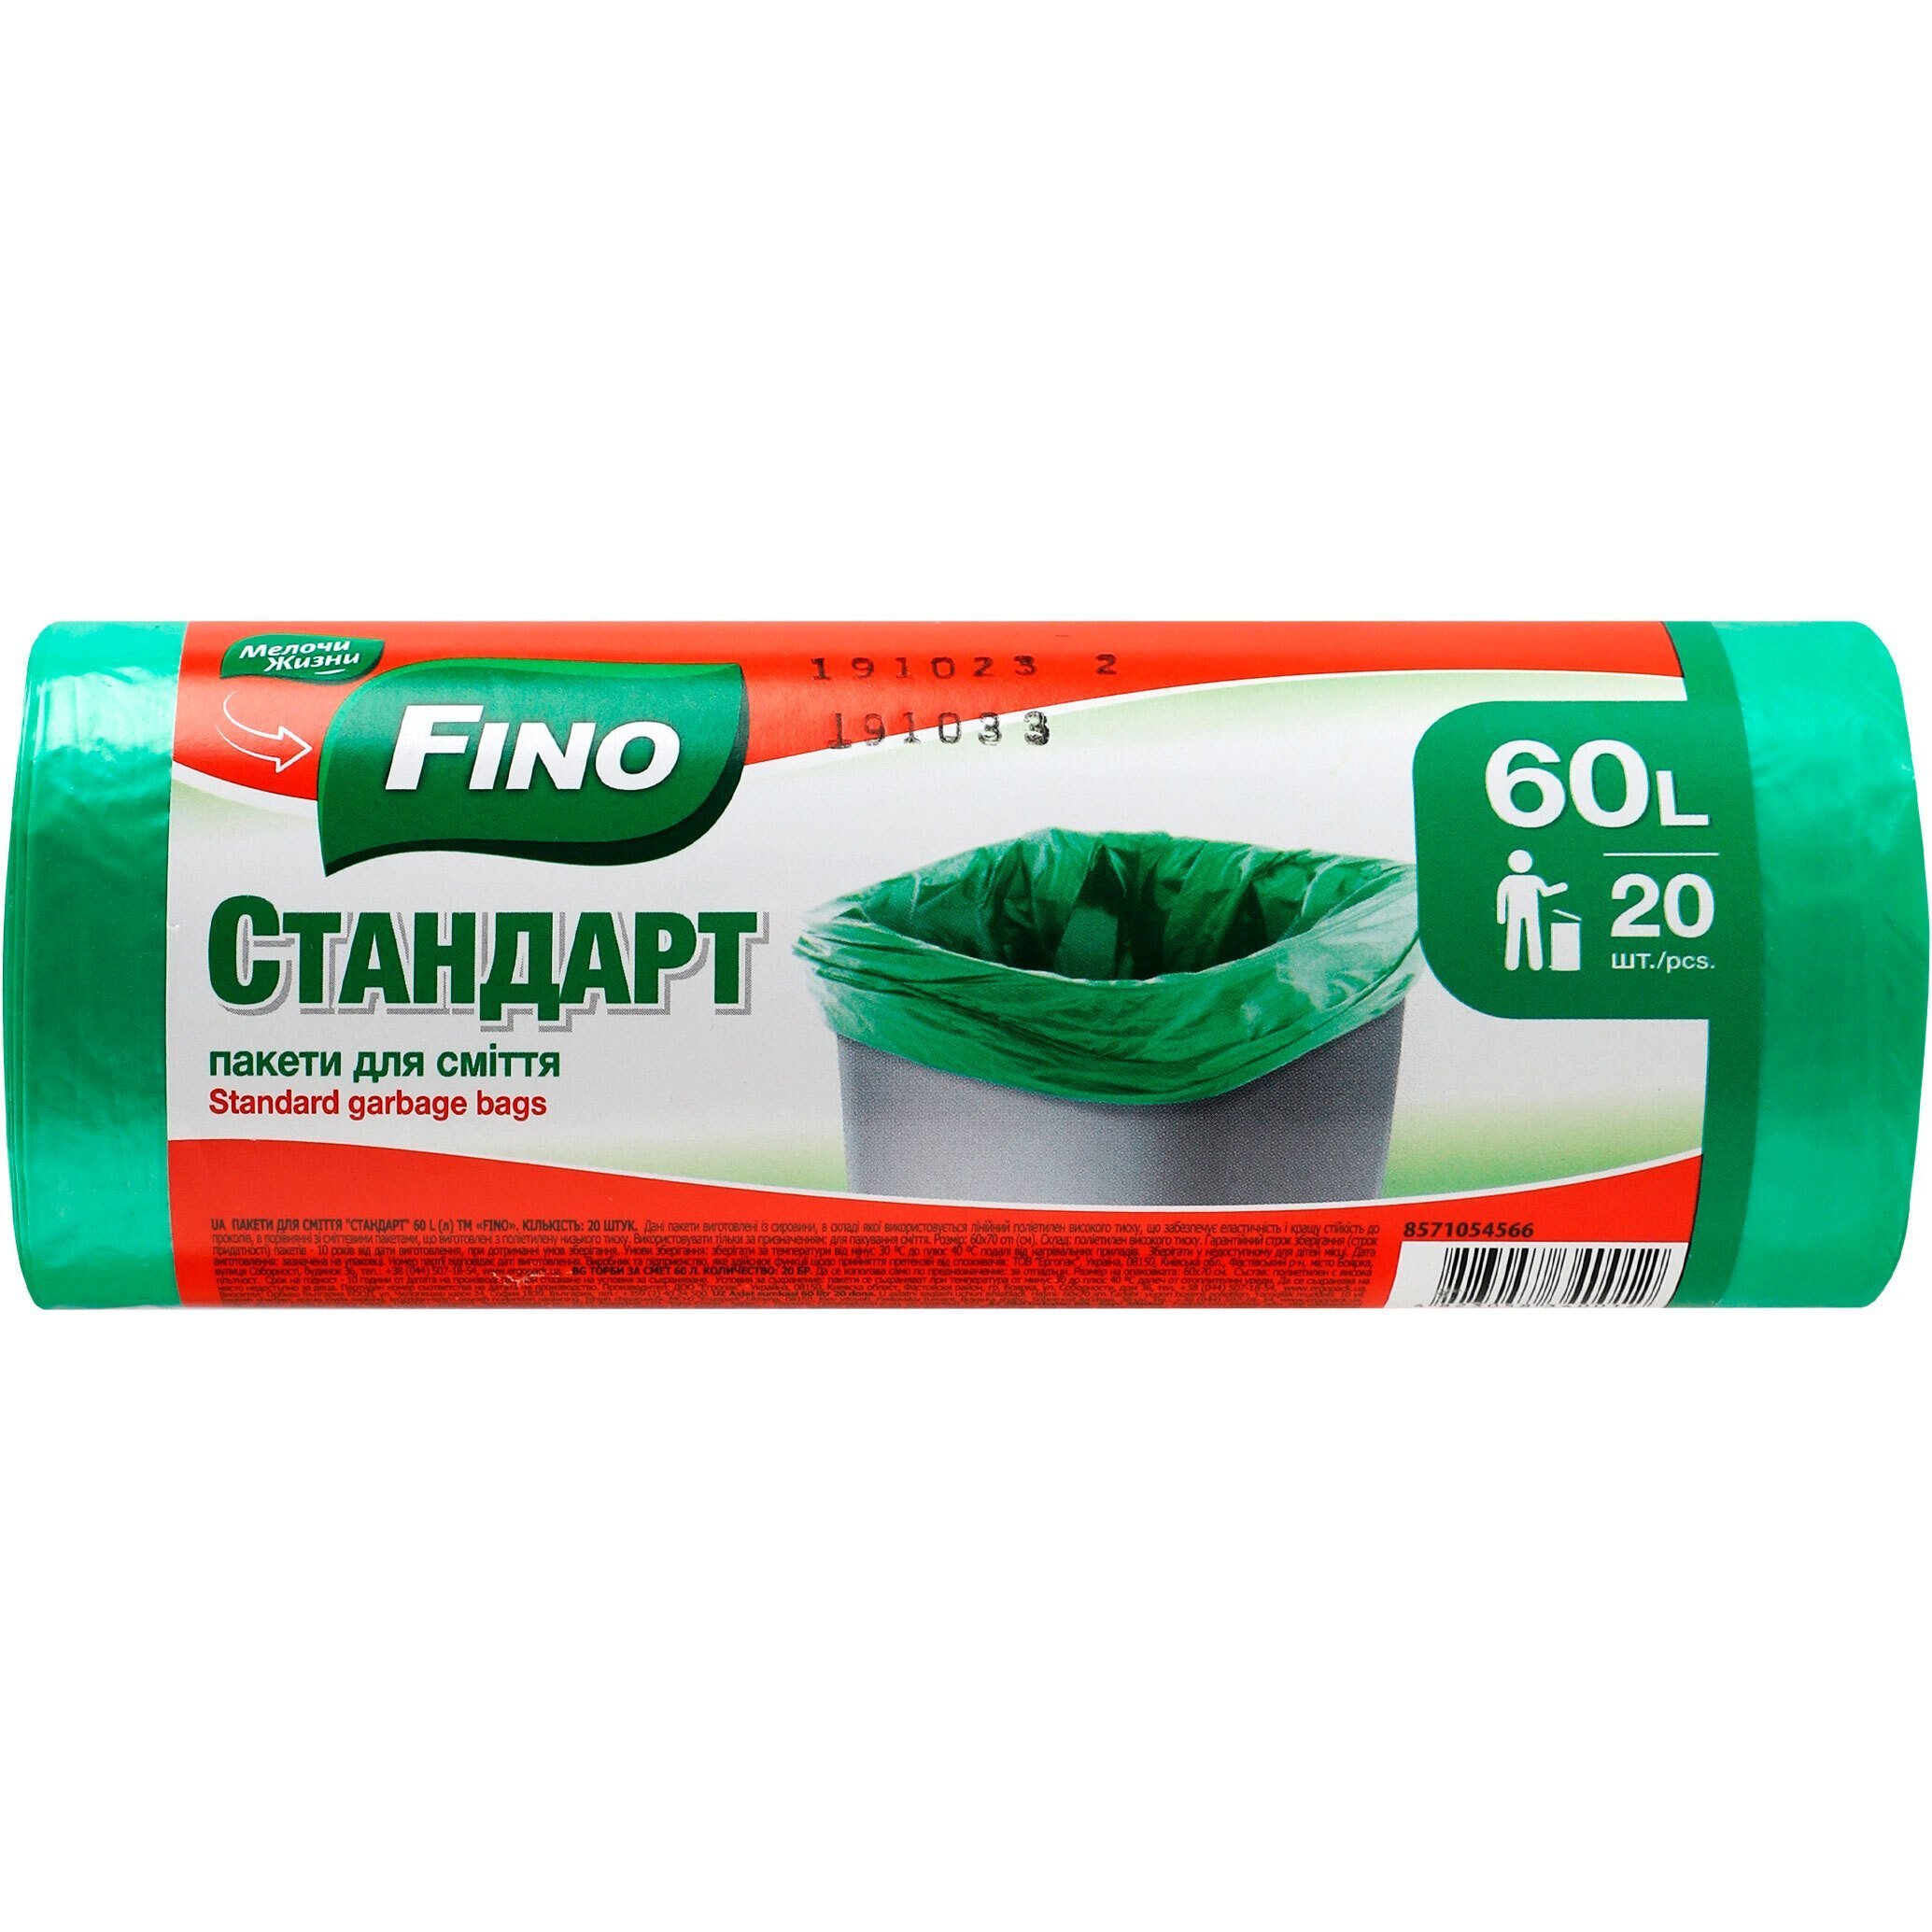 Пакети для сміття Fino Cтандарт 60л*20штфото1